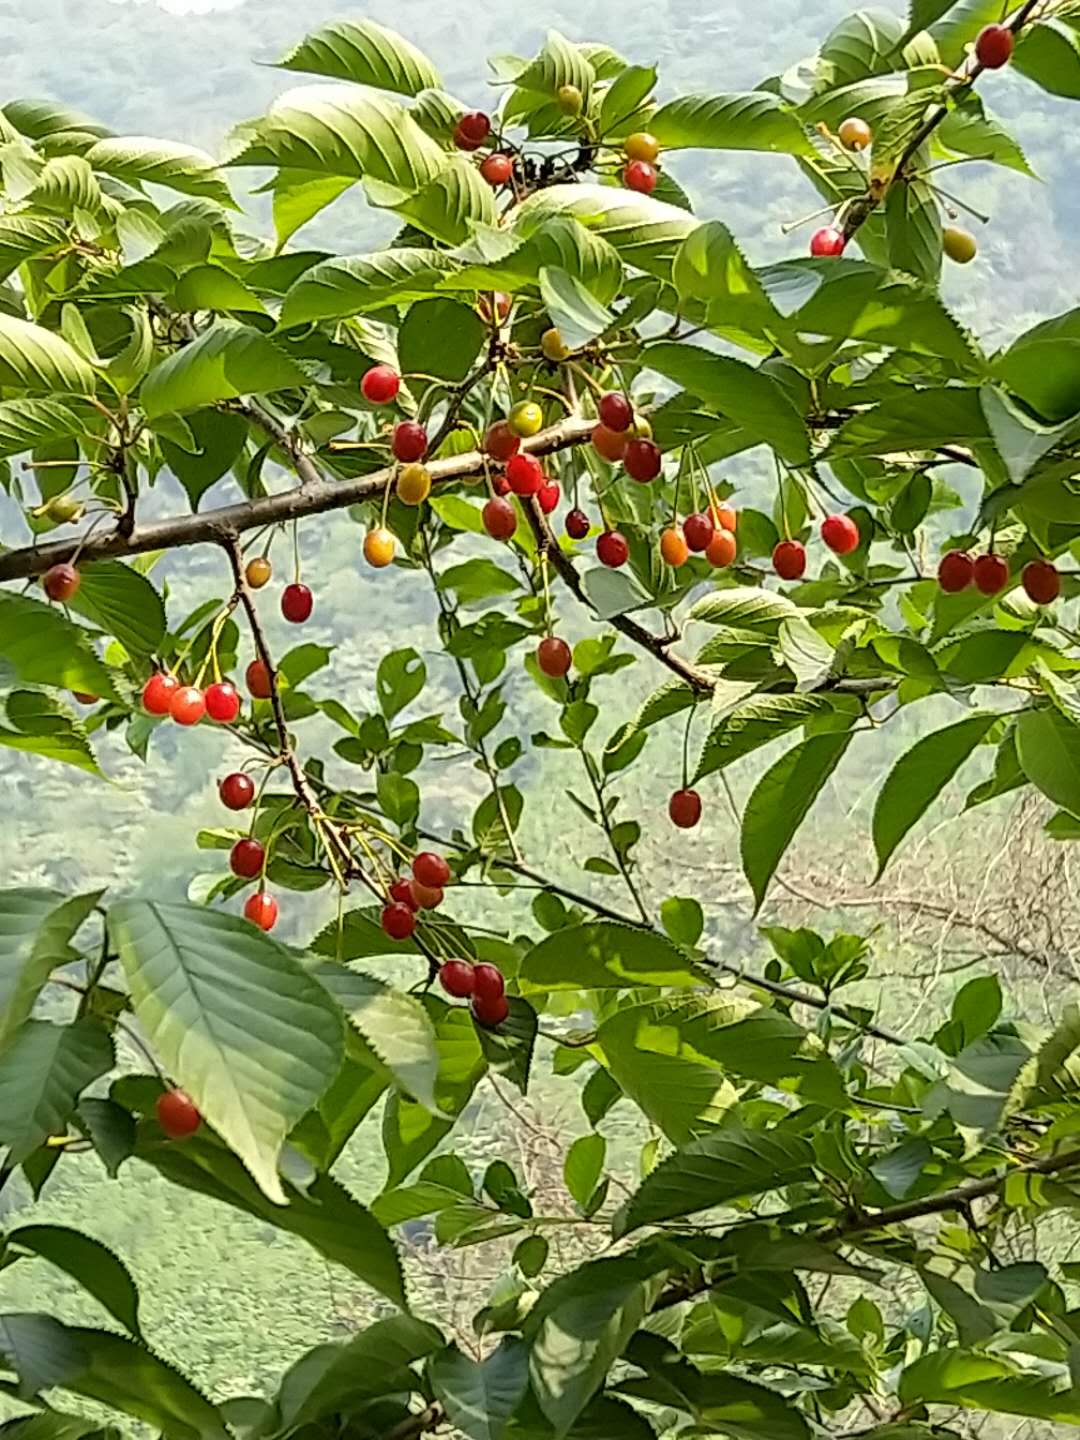 陕西省商洛市沙藏山樱桃种子种植基地